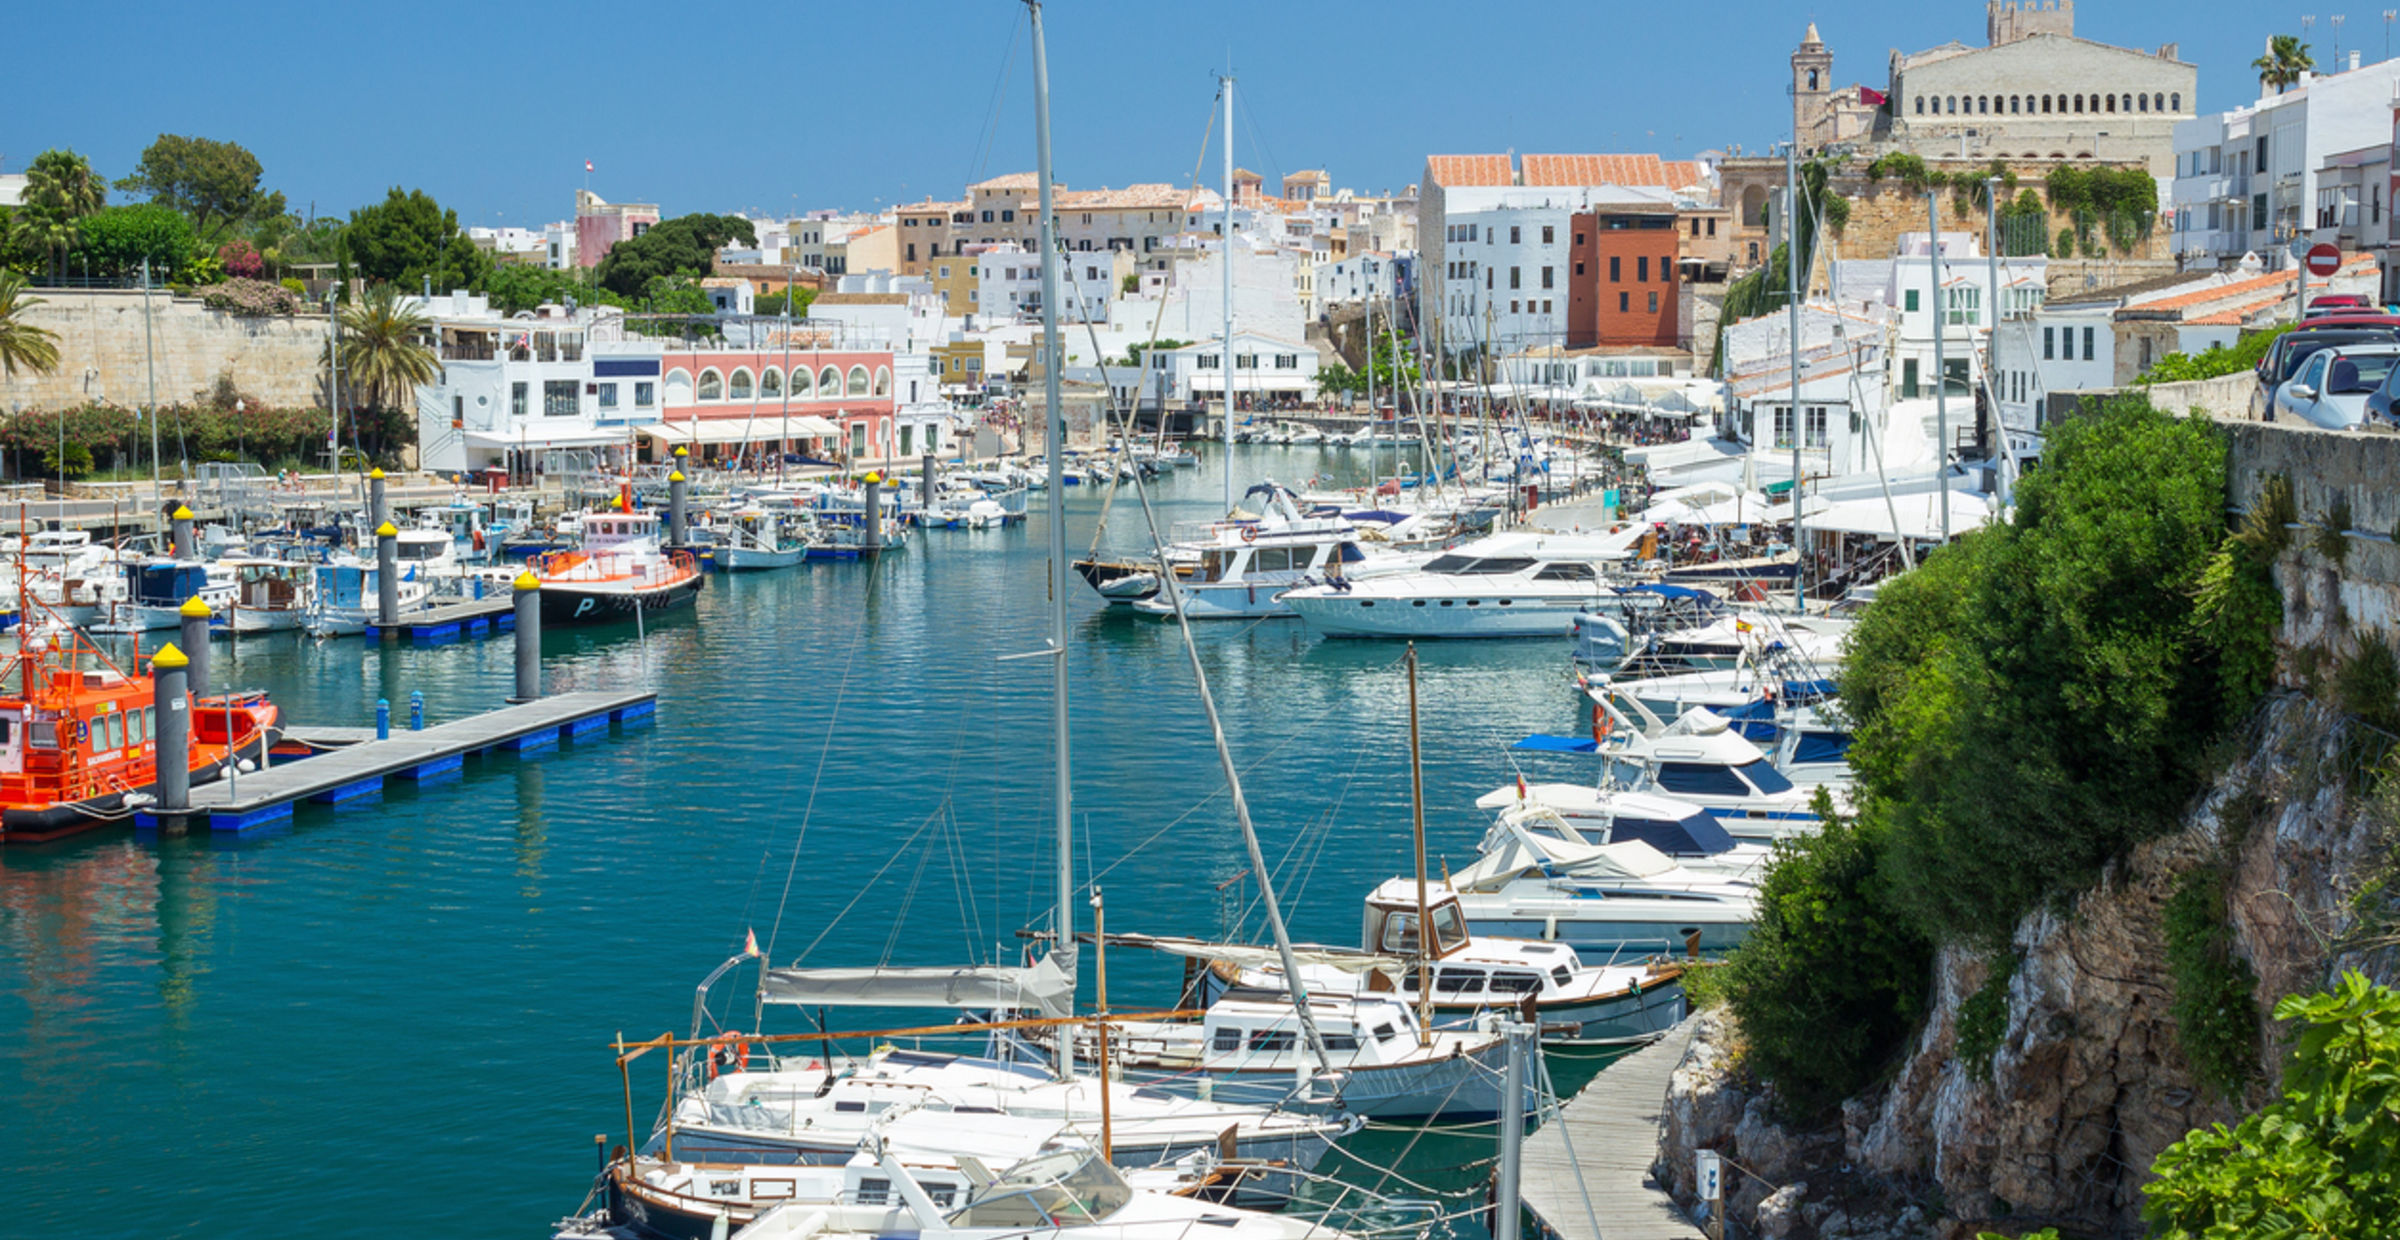 Hitta hotell i Ciutadella, Menorca